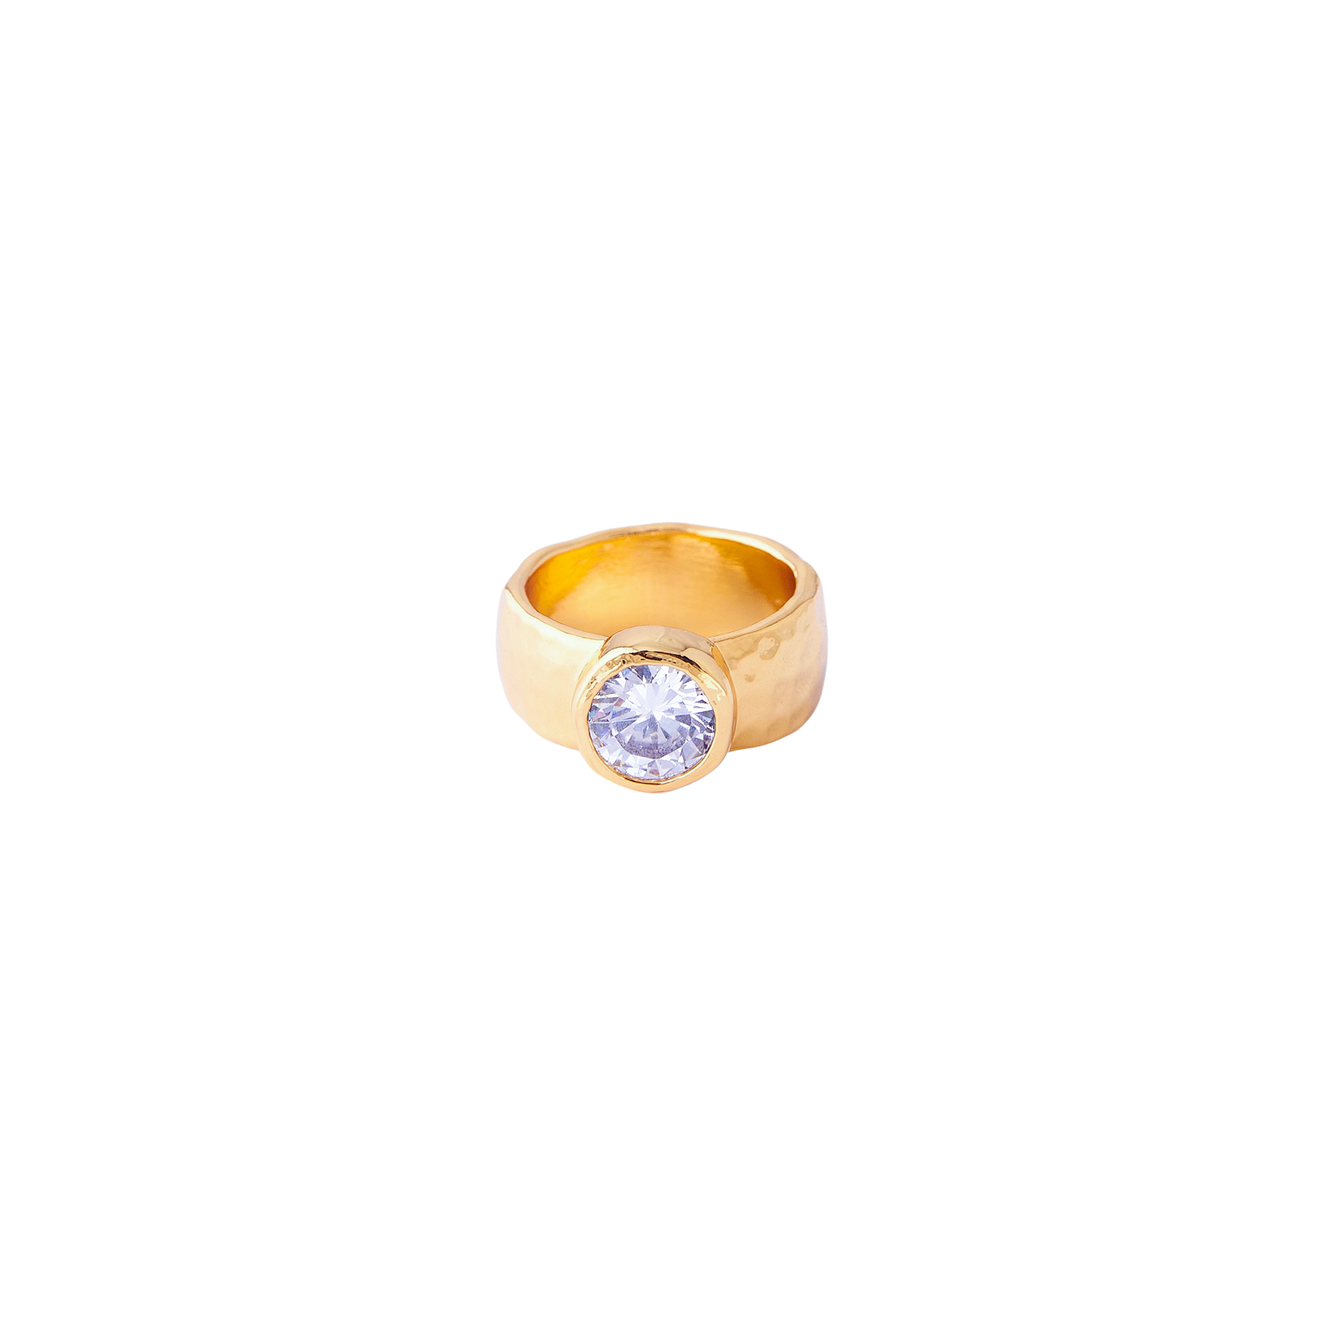 Herald Percy Золотистое кольцо с крупным кристаллом lisa smith золотистое кольцо с античным женским ликом